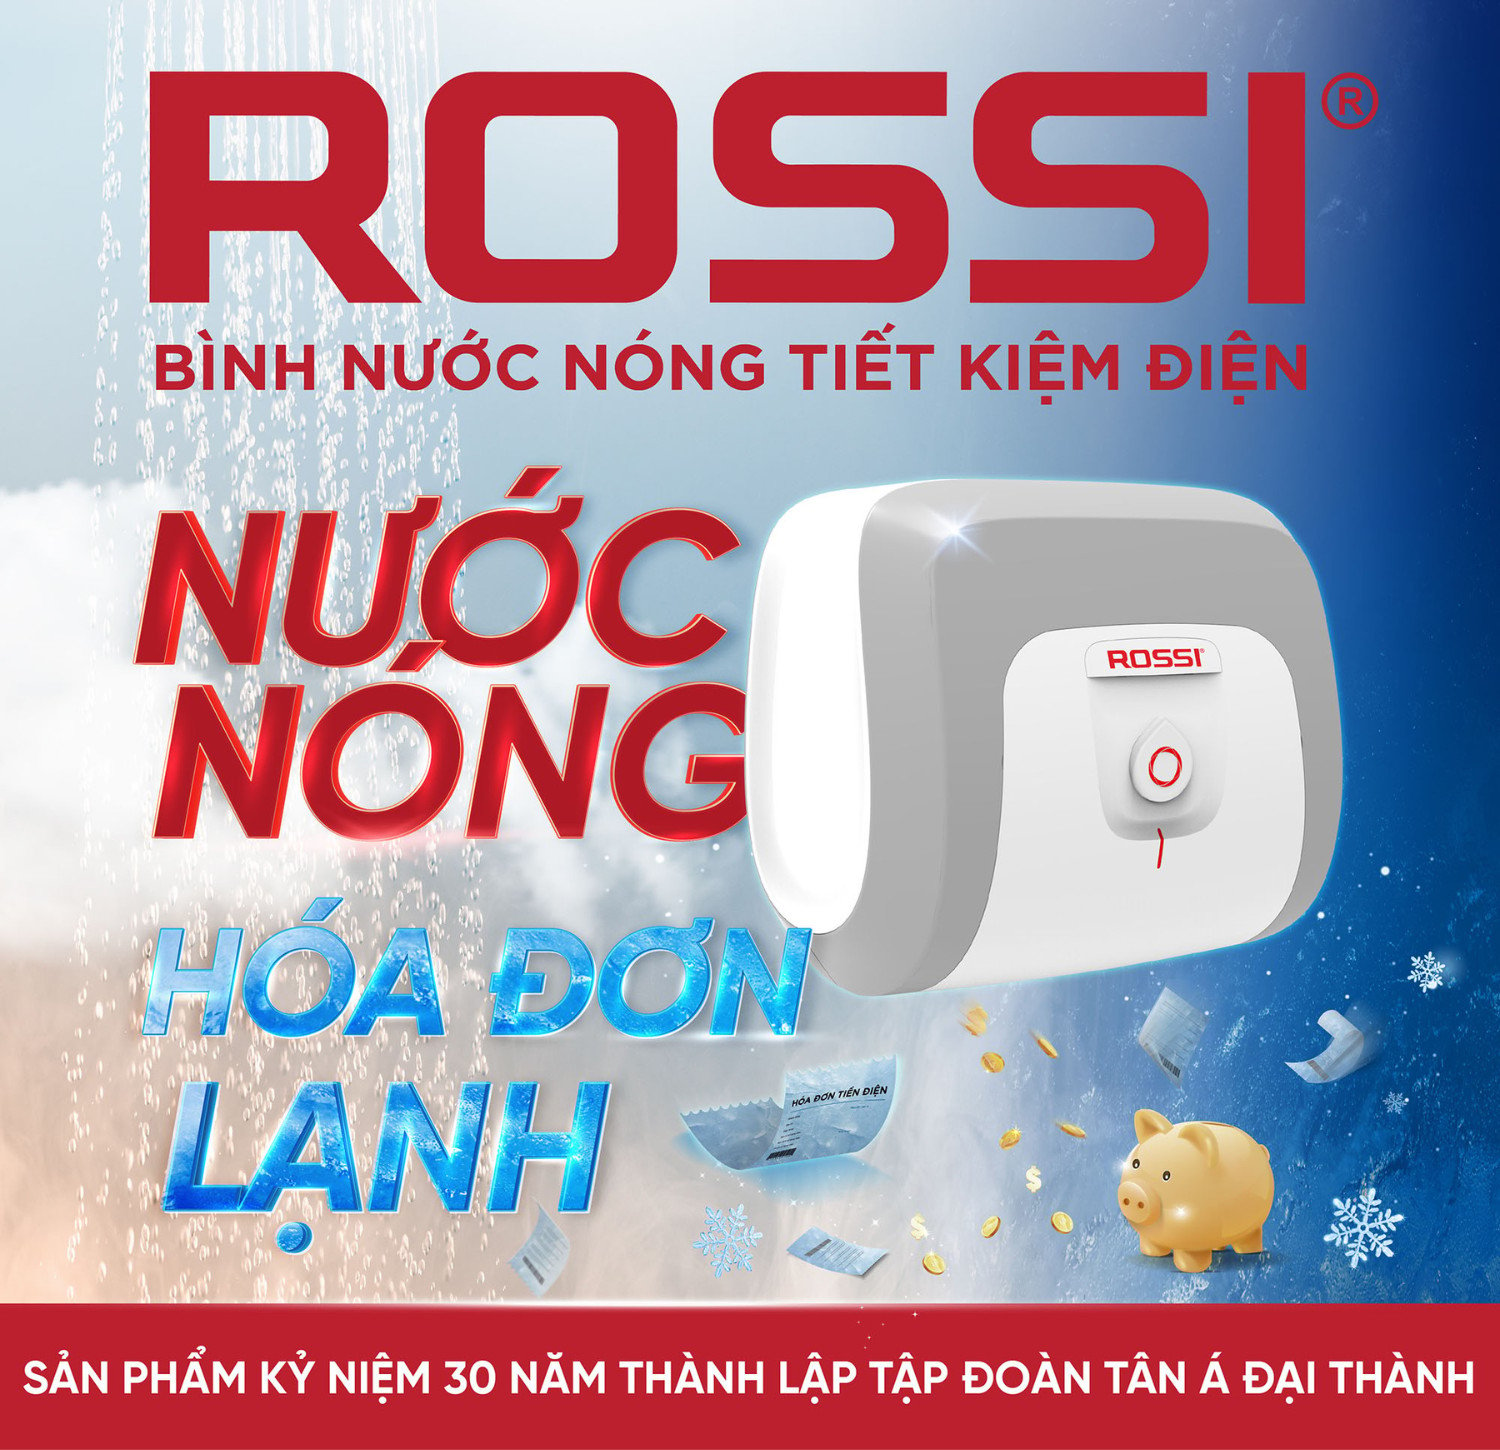 Bình nước nóng Rossi của Tập đoàn Tân Á Đại Thành phát huy lợi thế tiết kiệm điện năng hiệu quả.